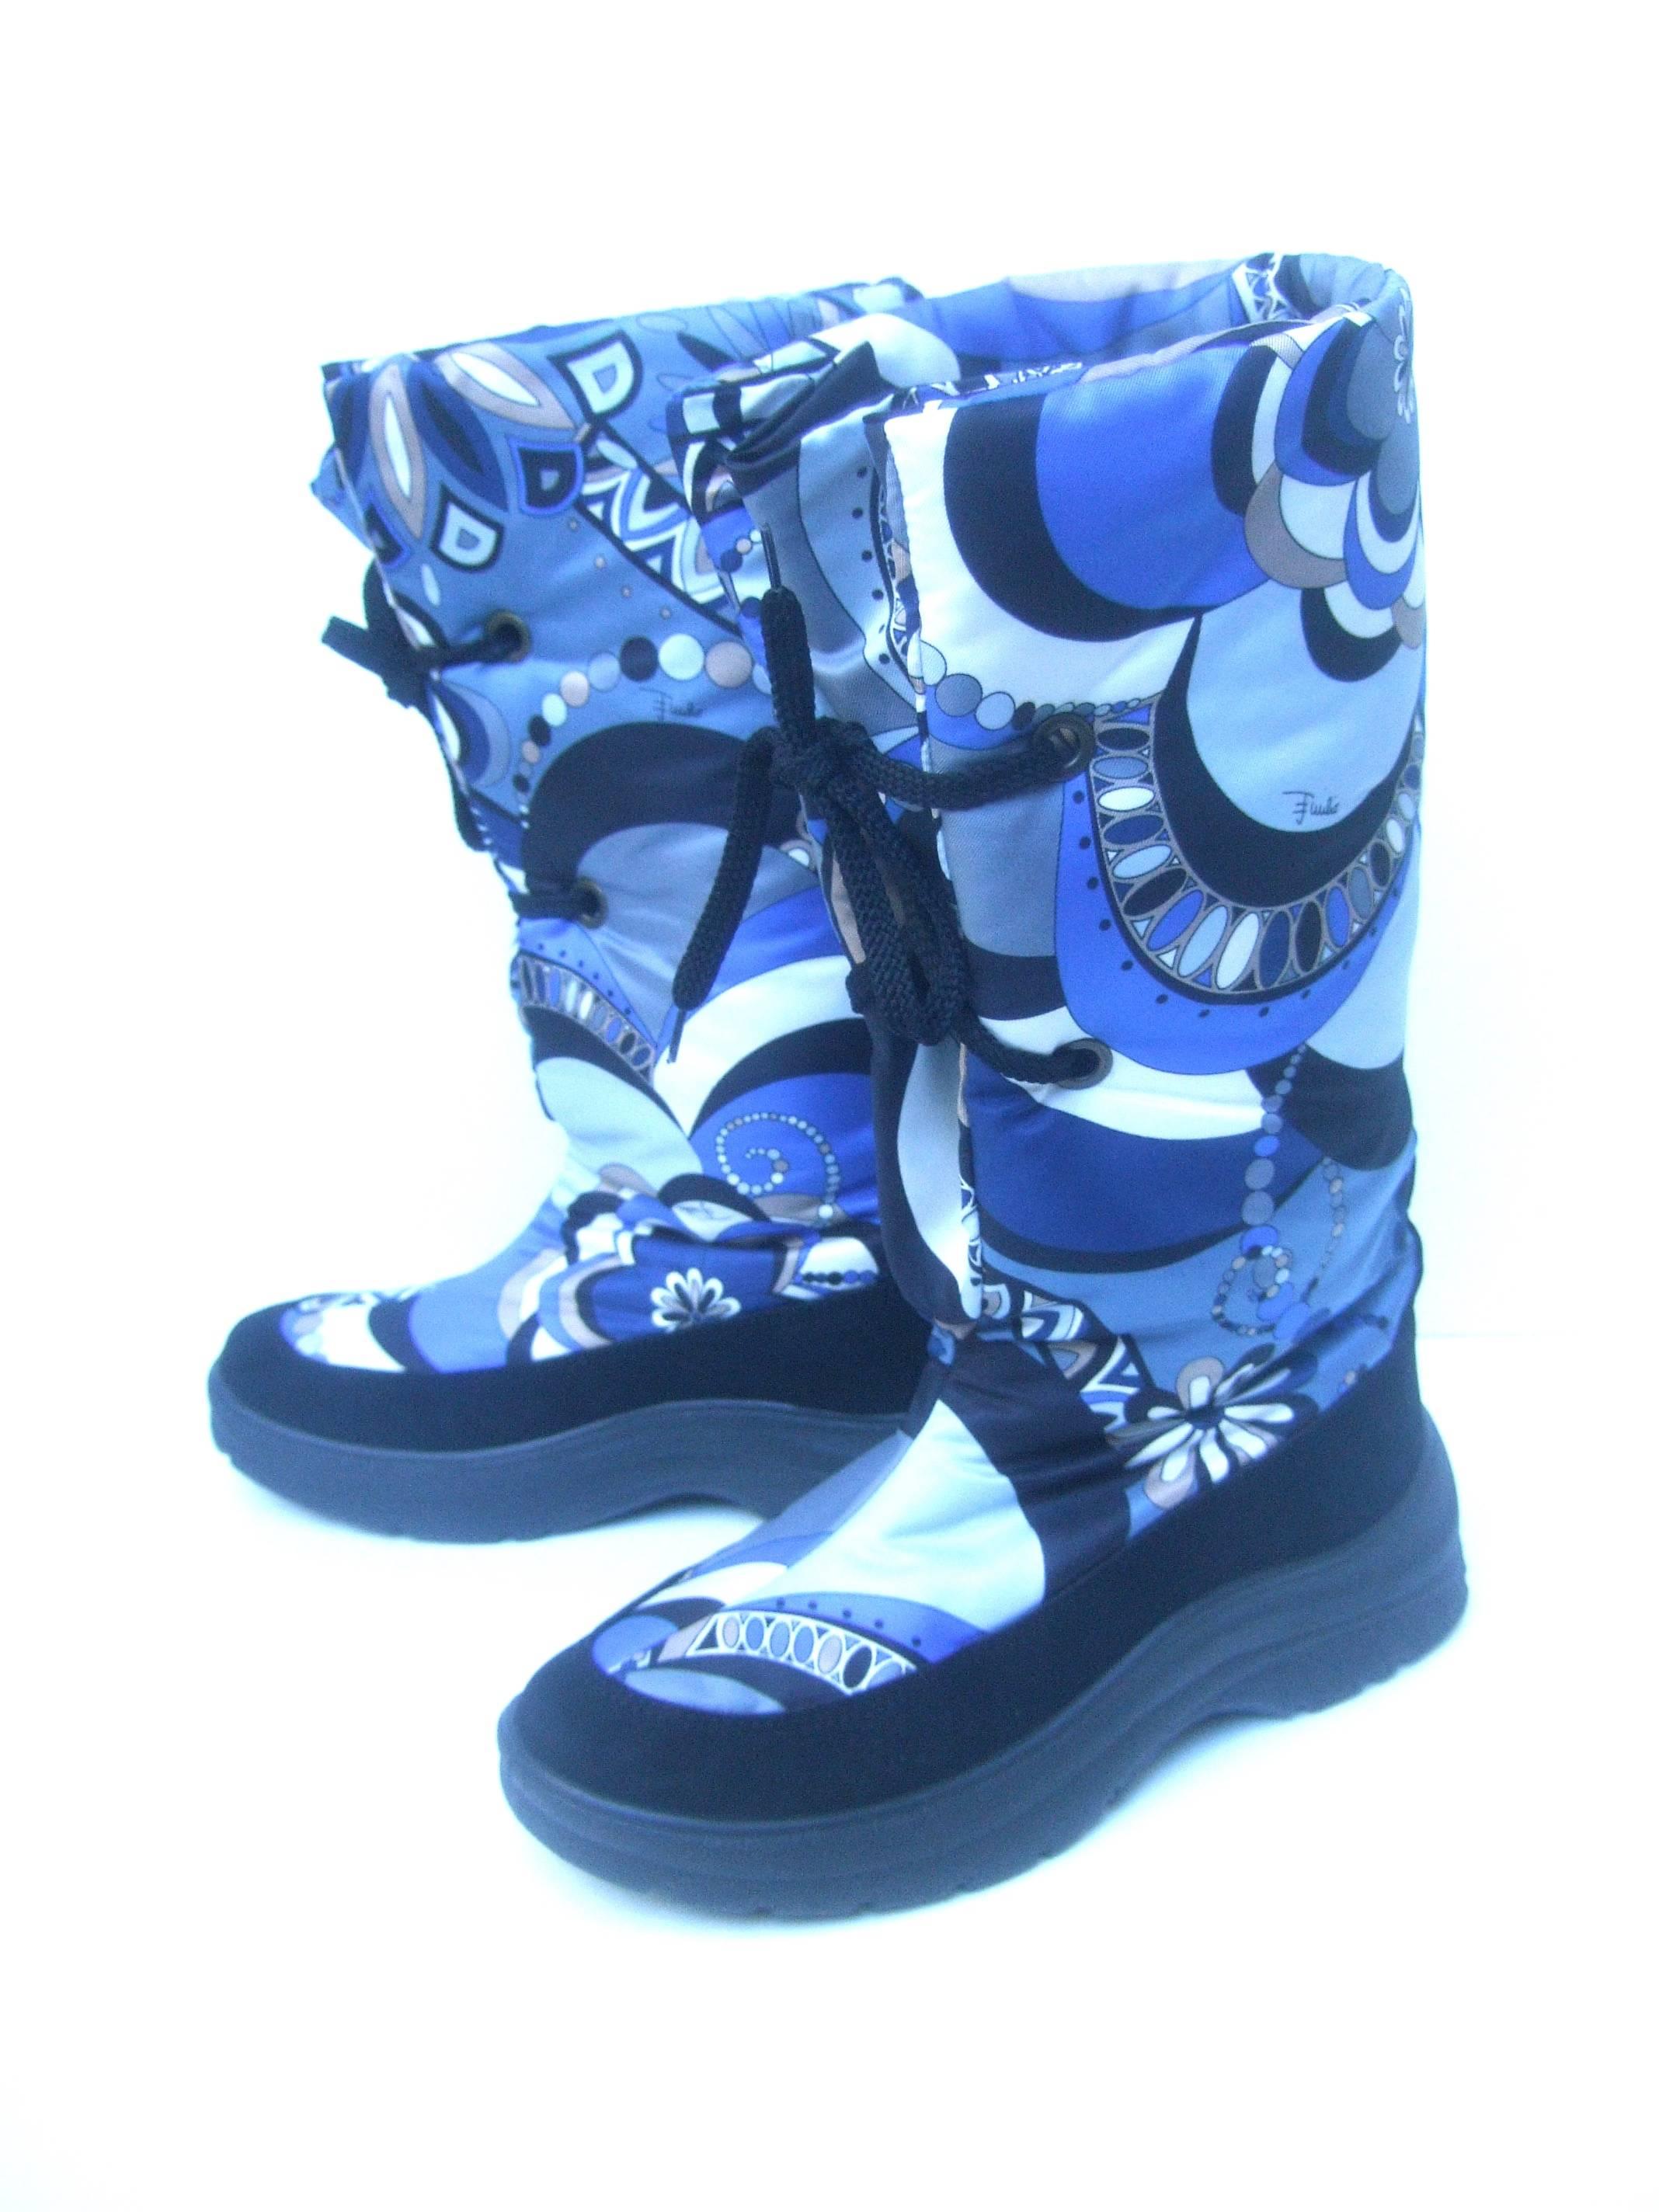 Emilio Pucci Bold Nylon Print Ski Boots Size 40  2